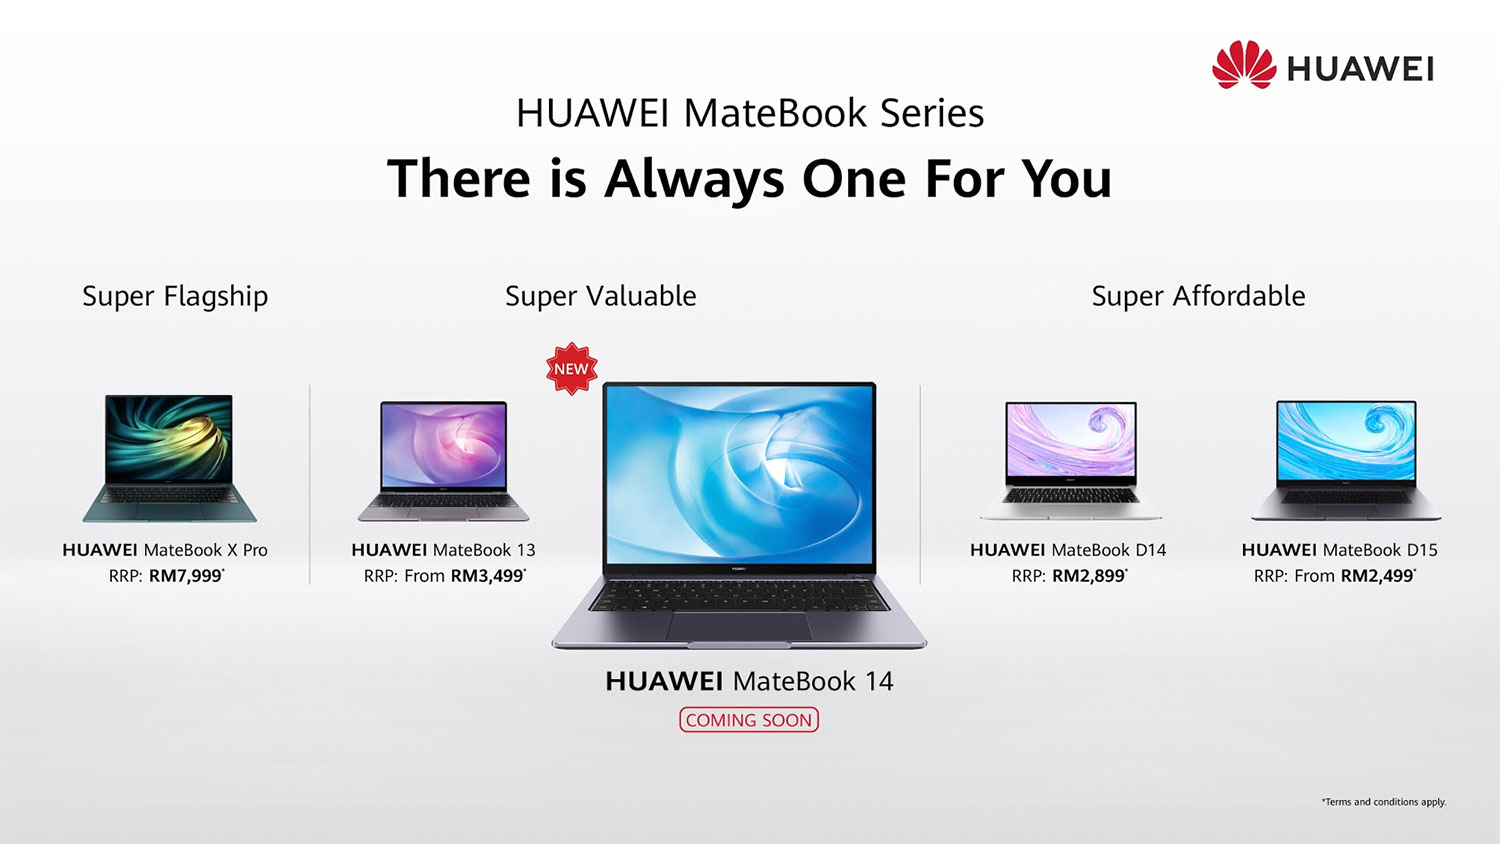 HUAWEI MateBook 14 Coming to Malaysia